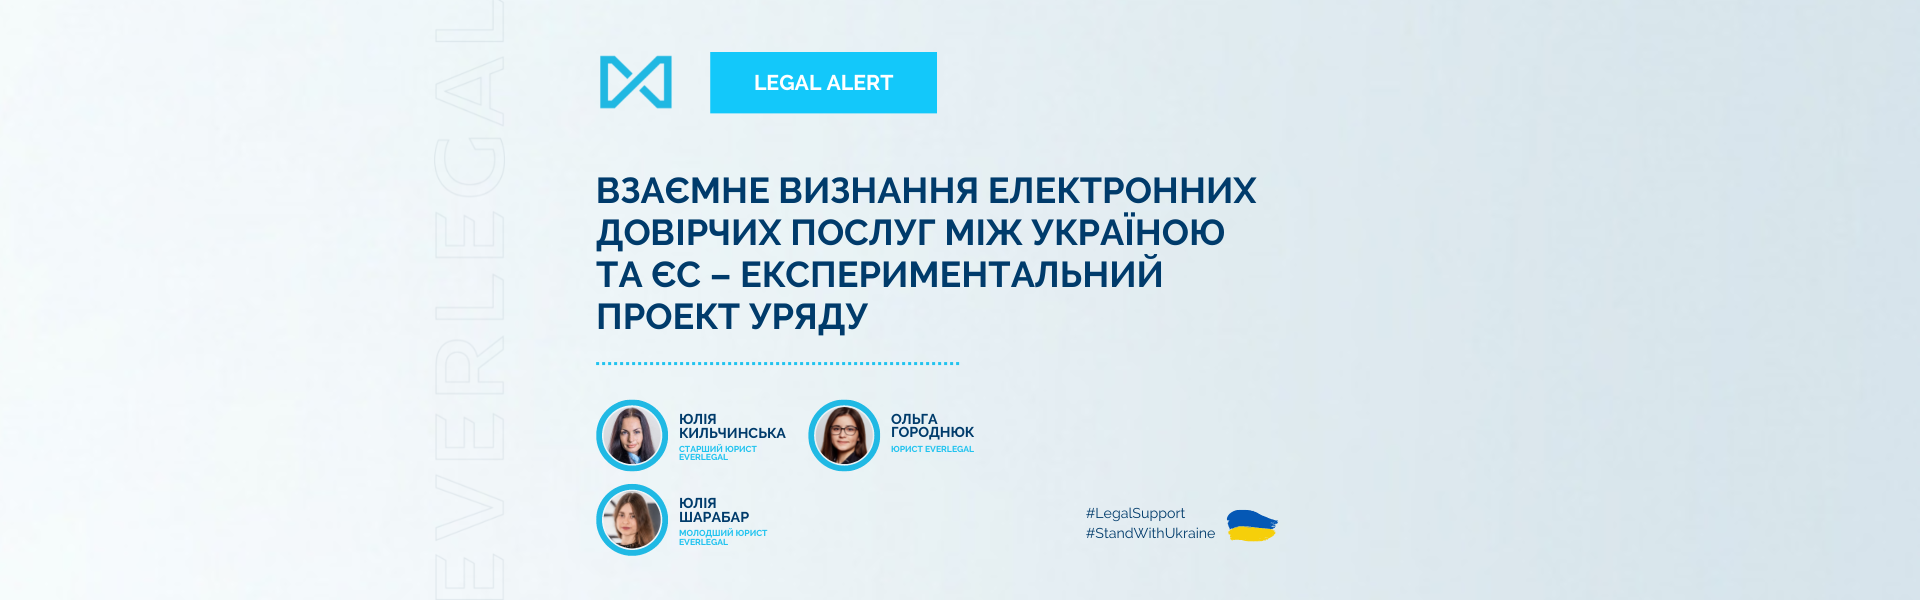 Взаємне визнання електронних довірчих послуг між Україною та ЄС – експериментальний проект Уряду